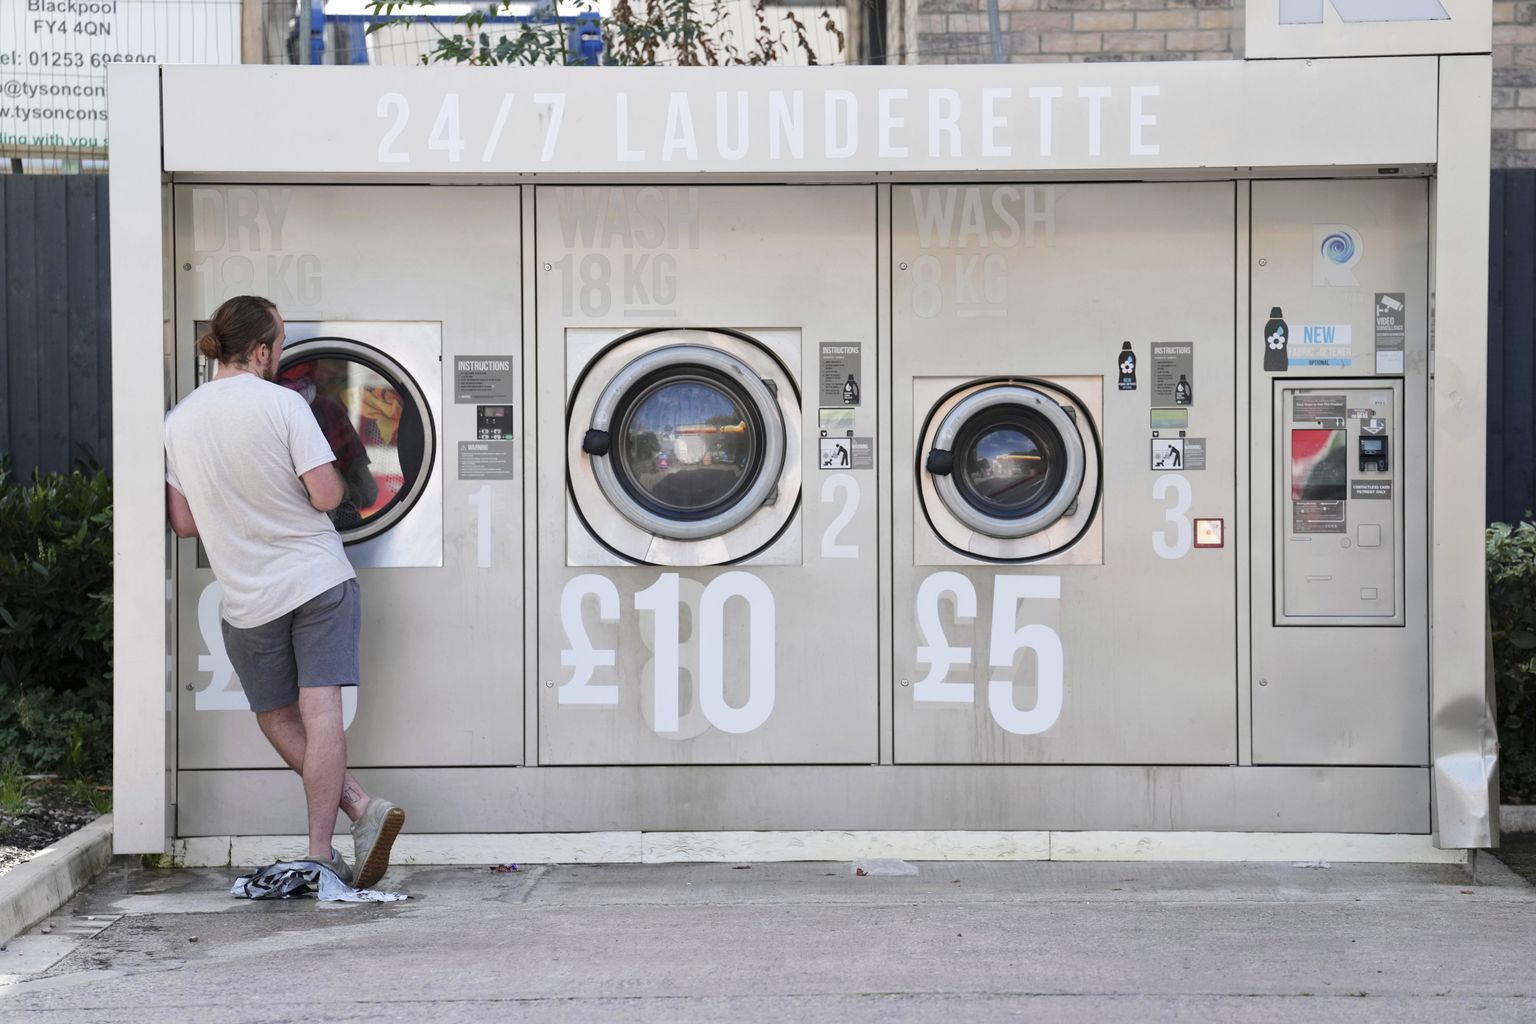 Briti härrasmees 7. septembril 2022 Manchesteri avalikus pesumajas. Masinatele on maalitud värsked hinnad.